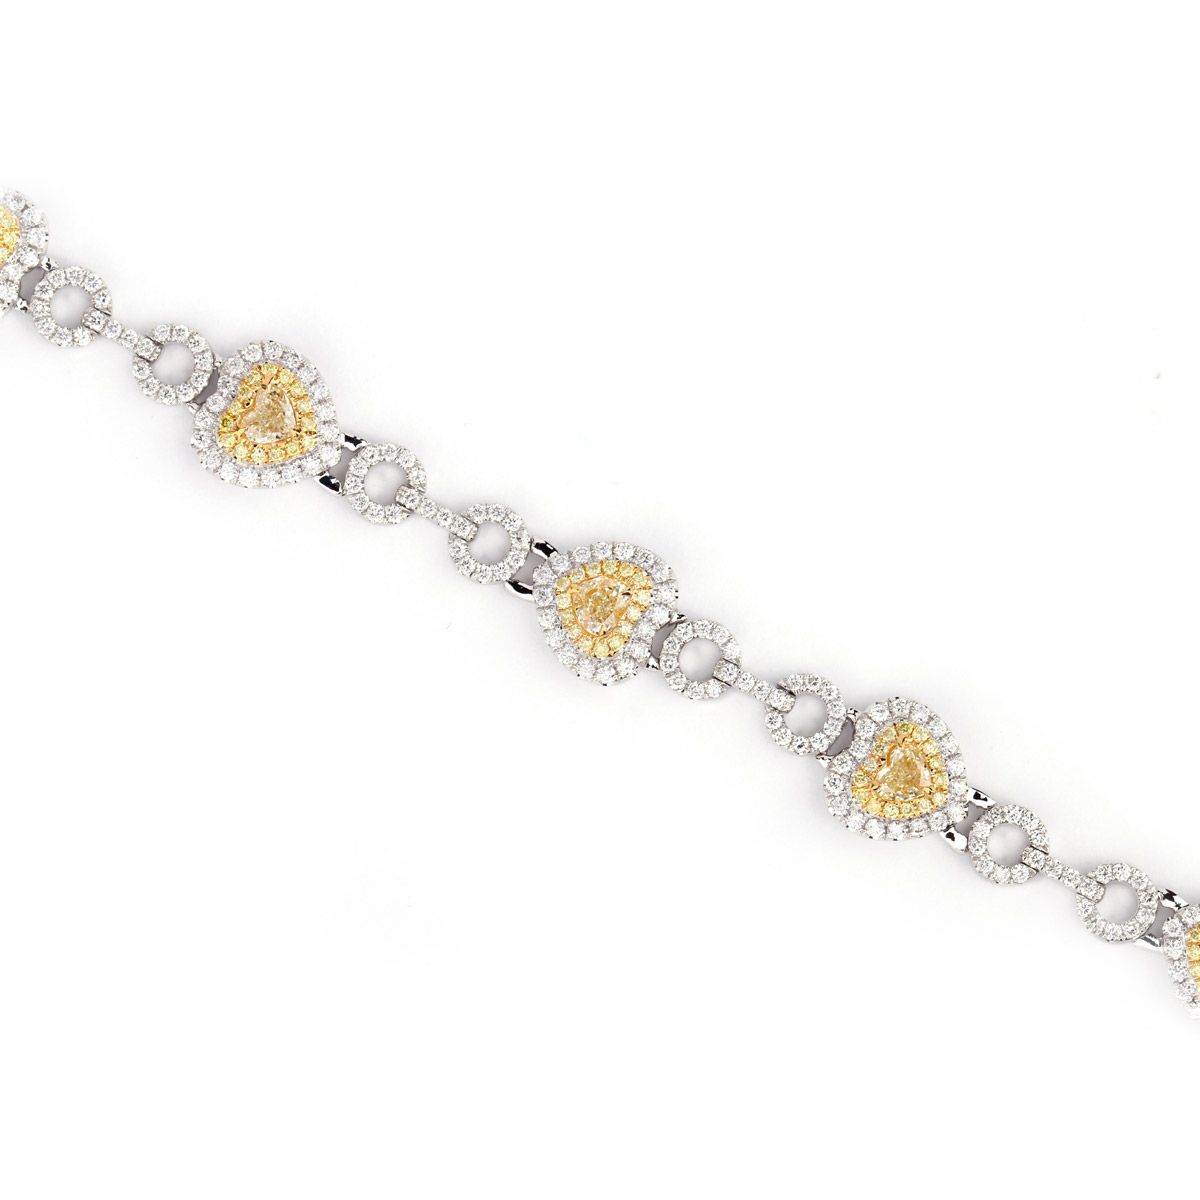 Fancy Yellow Diamond Bracelet, 1.76 Ct. (4.16 Ct. TW), Heart shape, EG_Lab Certified, J5726116735